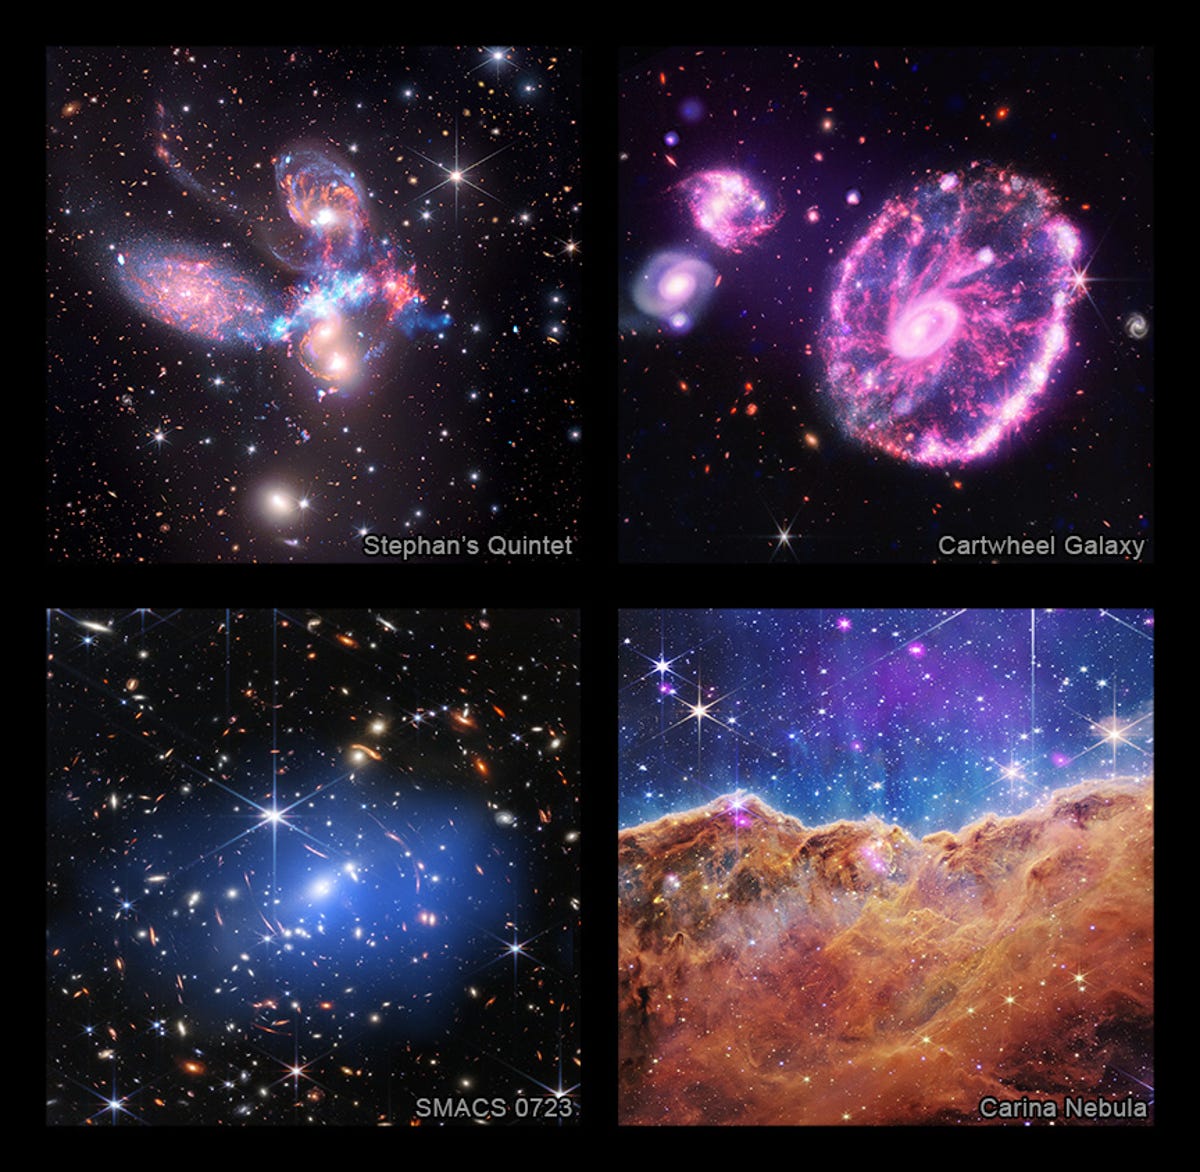 左上はステファンのクインテットの合成画像、右上は側転銀河、左下はウェッブのファースト ディープ フィールド、右下はカリーナ星雲です。